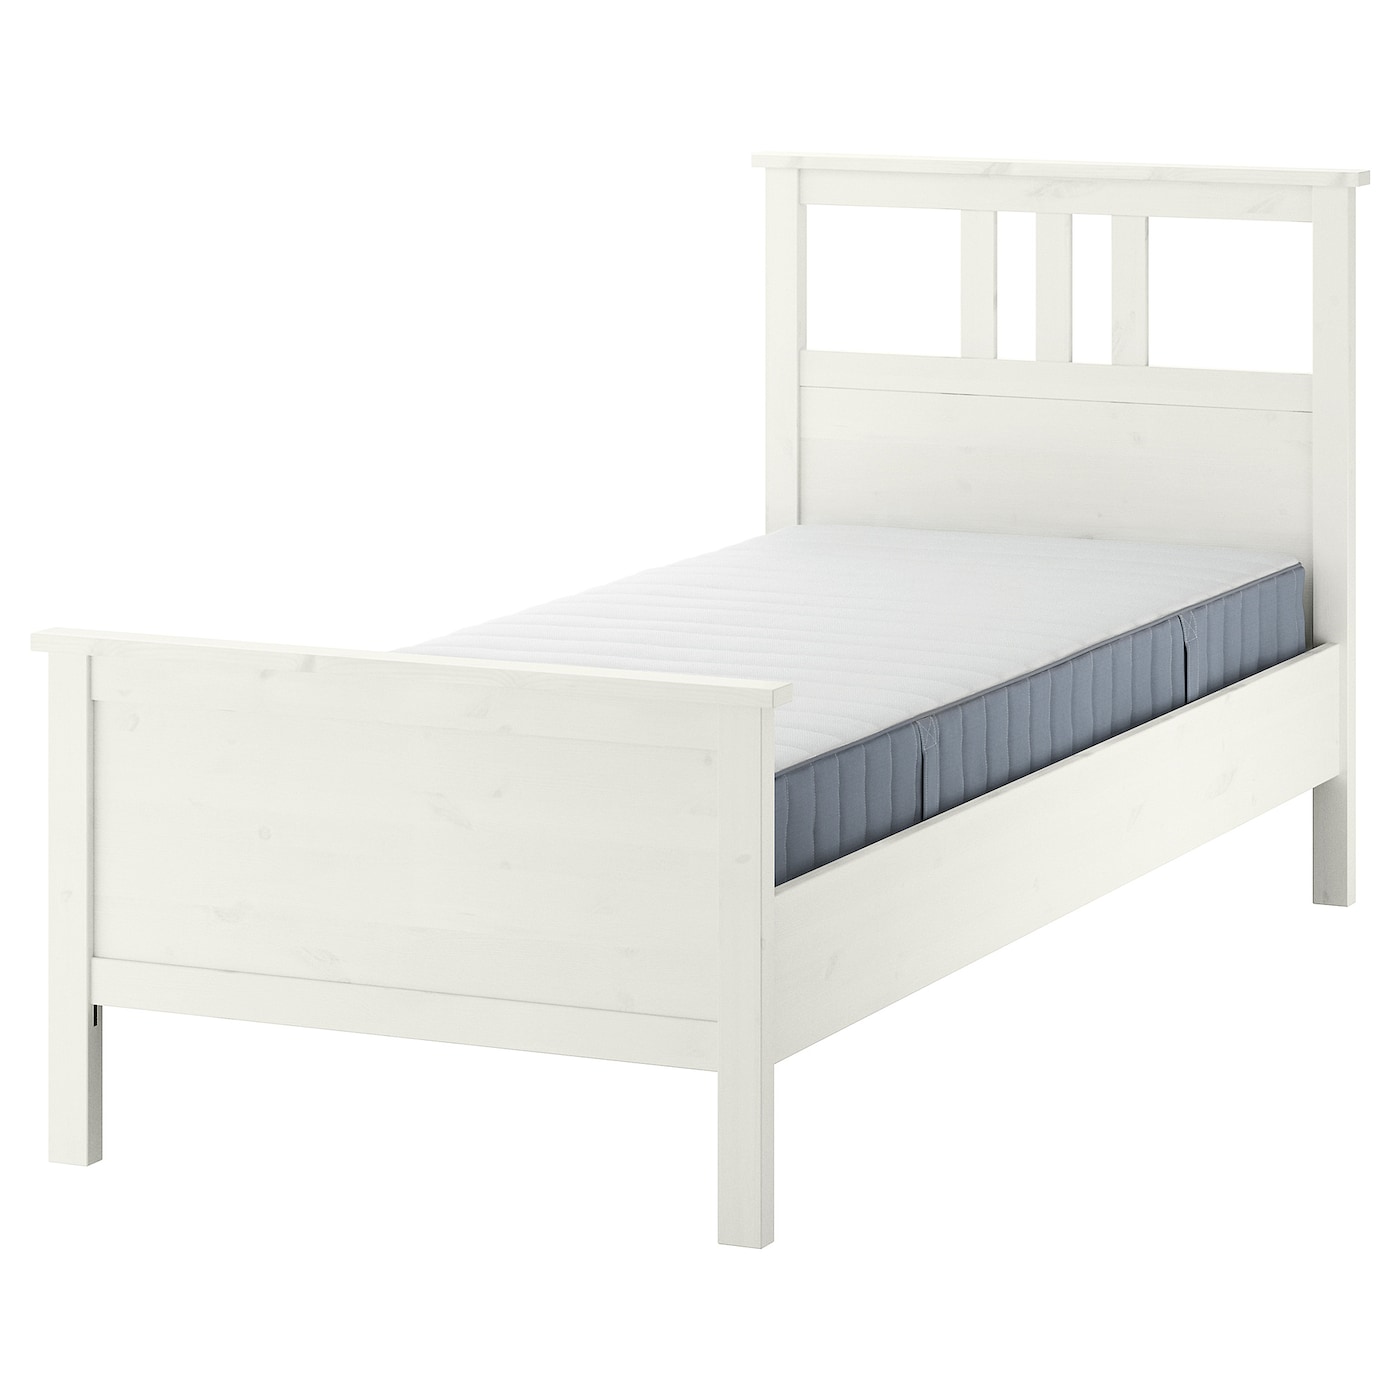 Кровать - IKEA HEMNES, 200х120 см, матрас средне-жесткий, белый, ХЕМНЭС ИКЕА